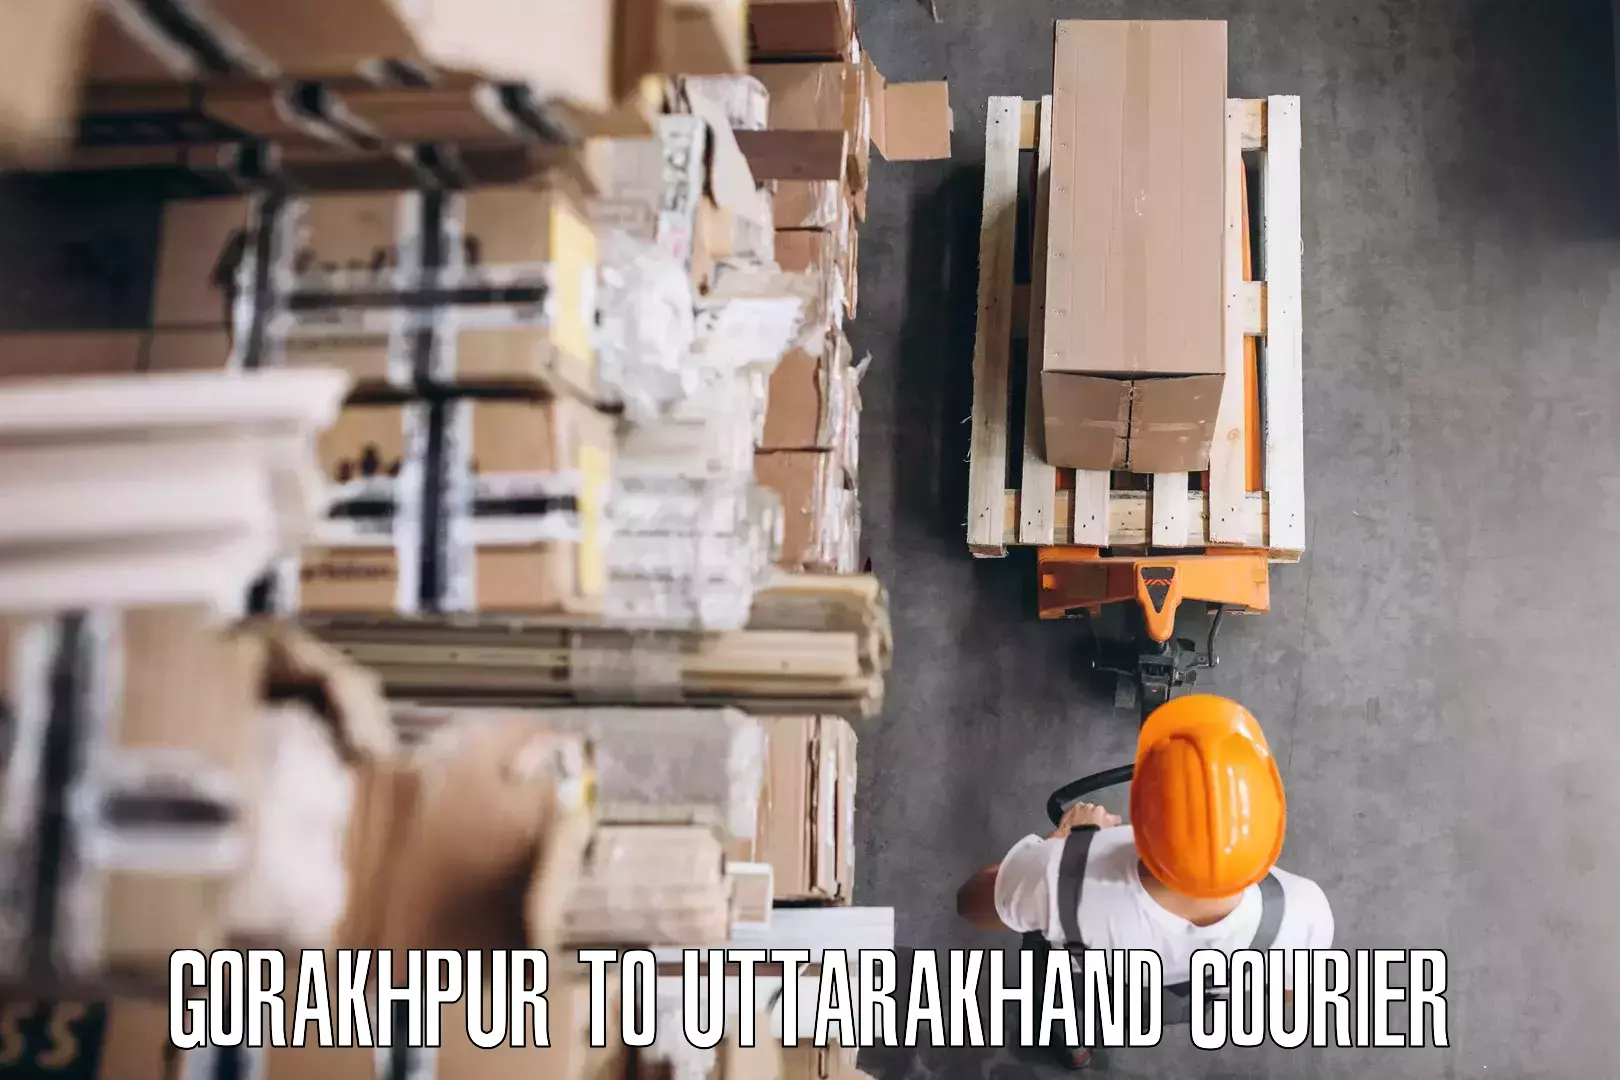 Furniture transport experts Gorakhpur to Kotdwara